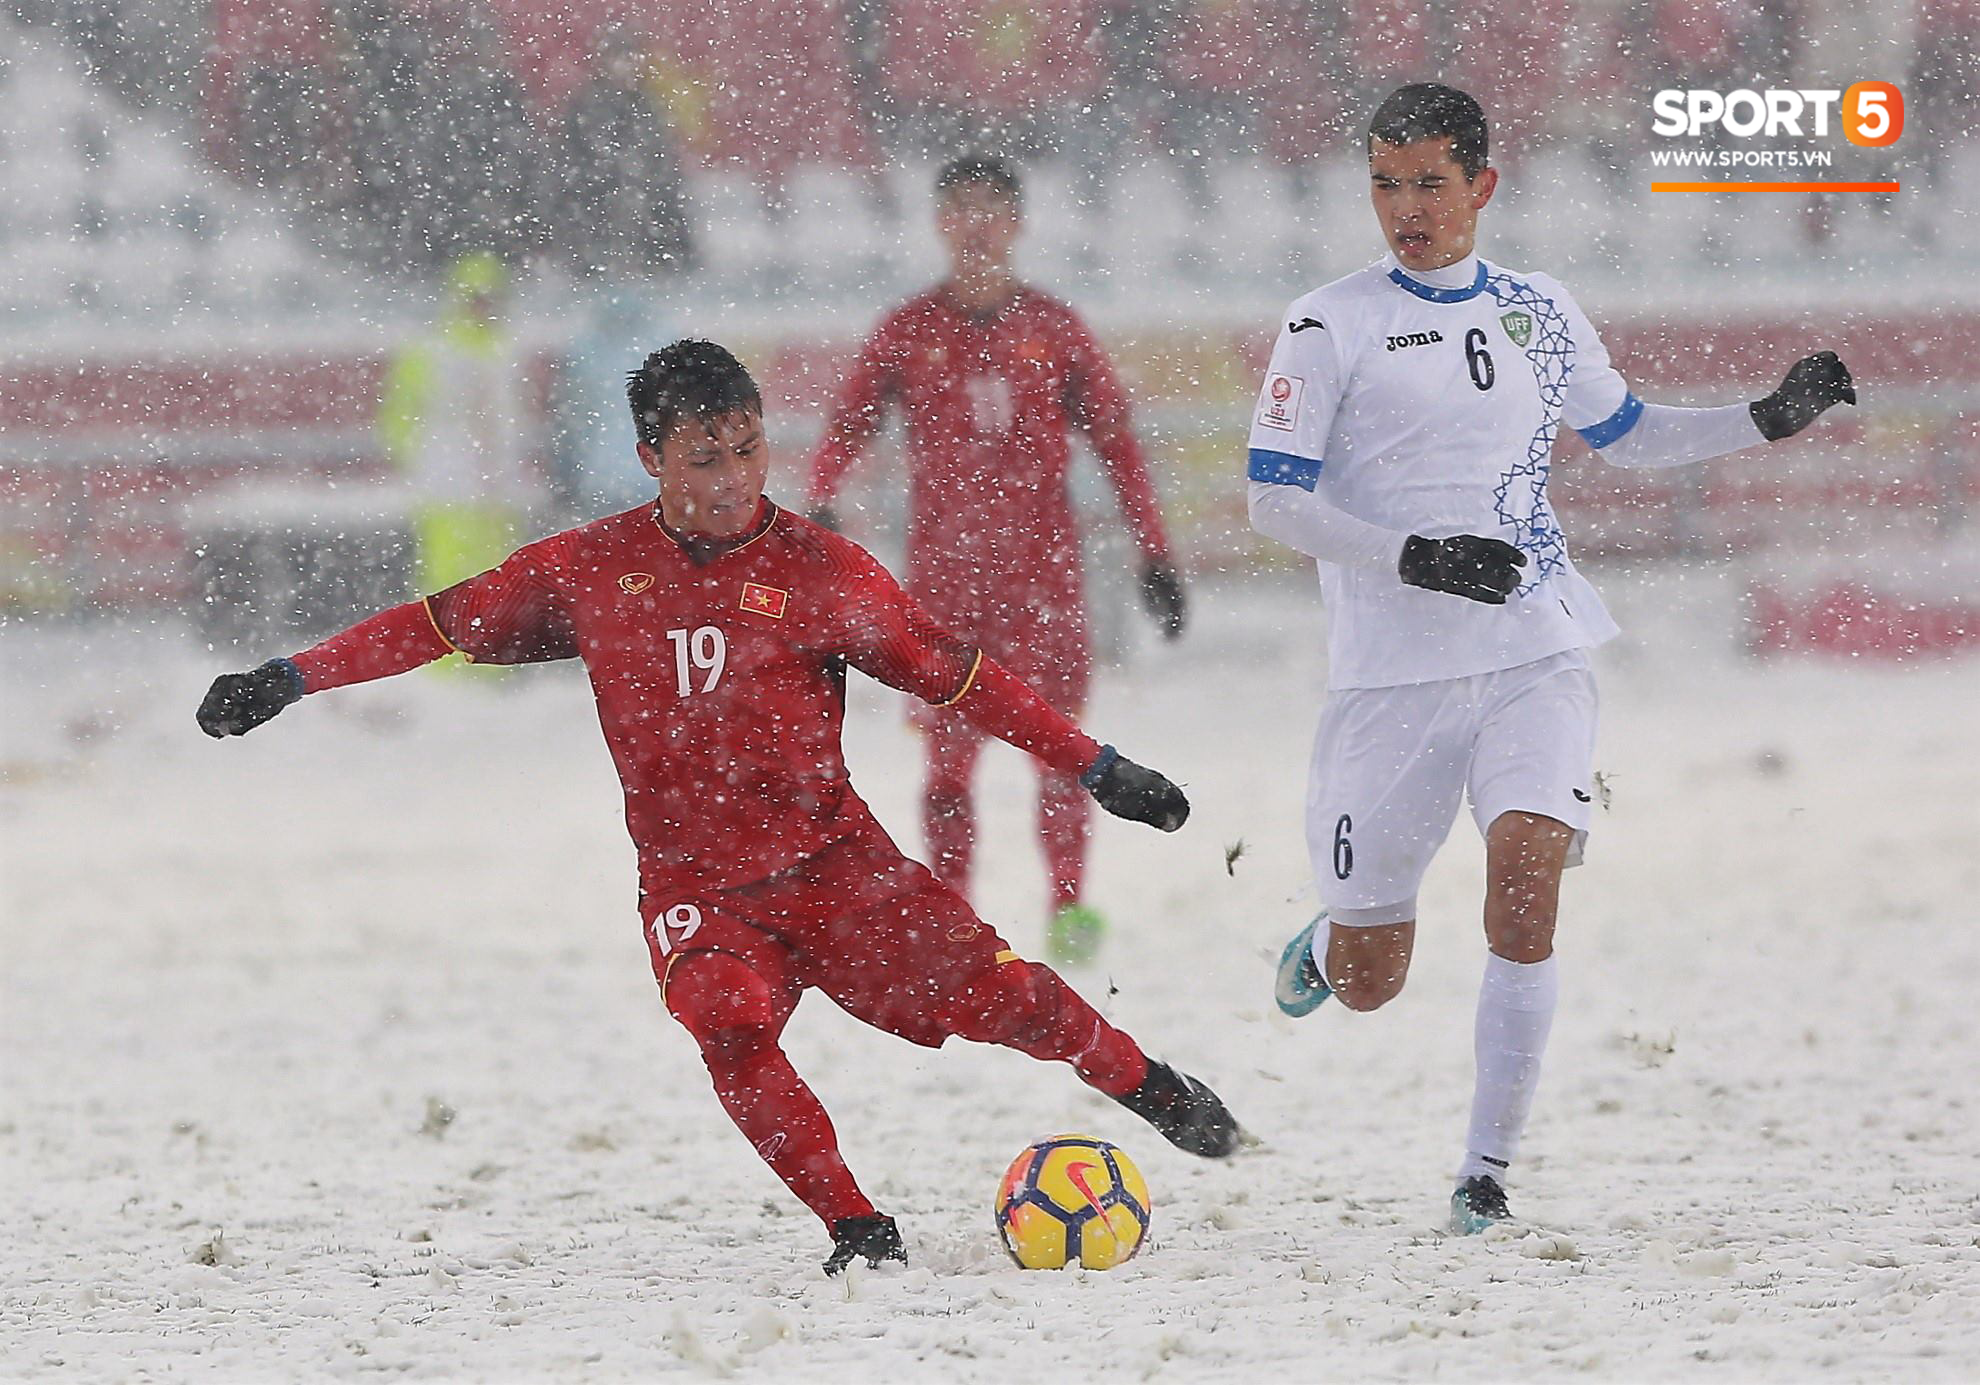 Hãy quên trận thua trên tuyết đi, U23 Việt Nam sắp tái đấu U23 Uzbekistan tại chảo lửa Mỹ Đình - Ảnh 1.